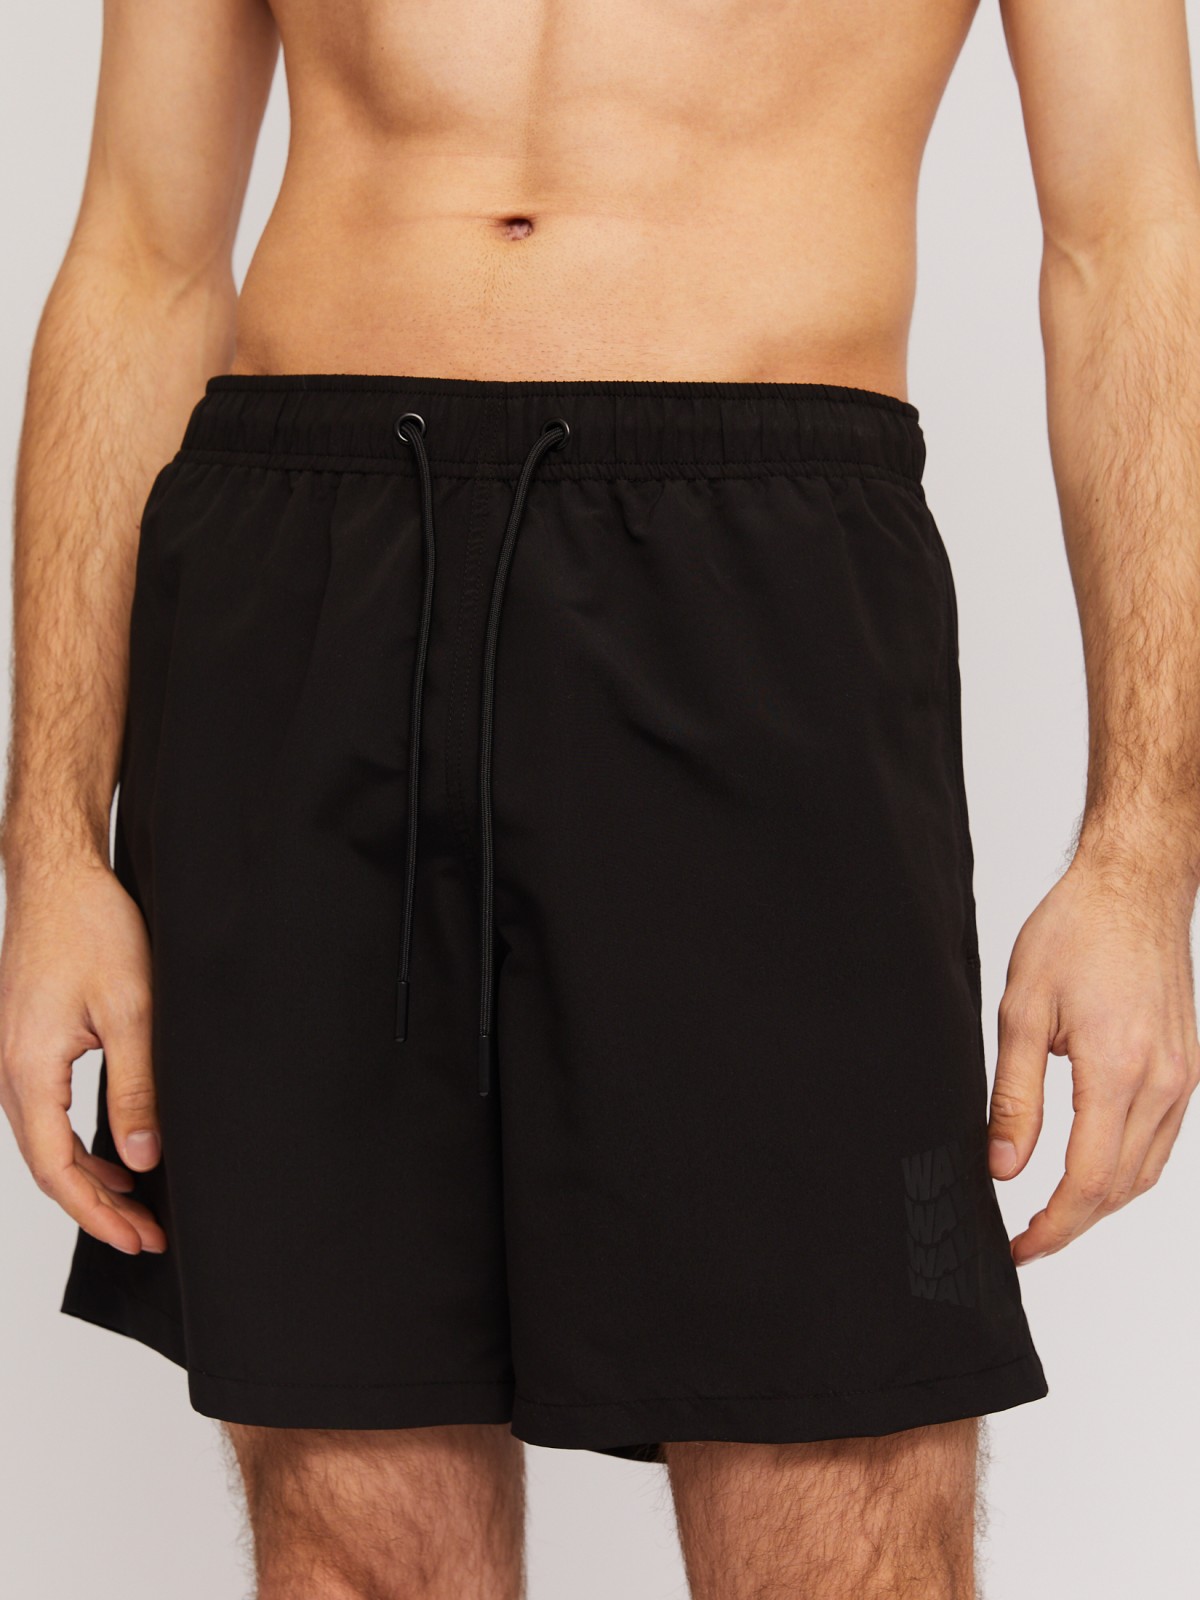 Пляжные шорты (для плавания) zolla N14247S39043, цвет черный, размер S - фото 4